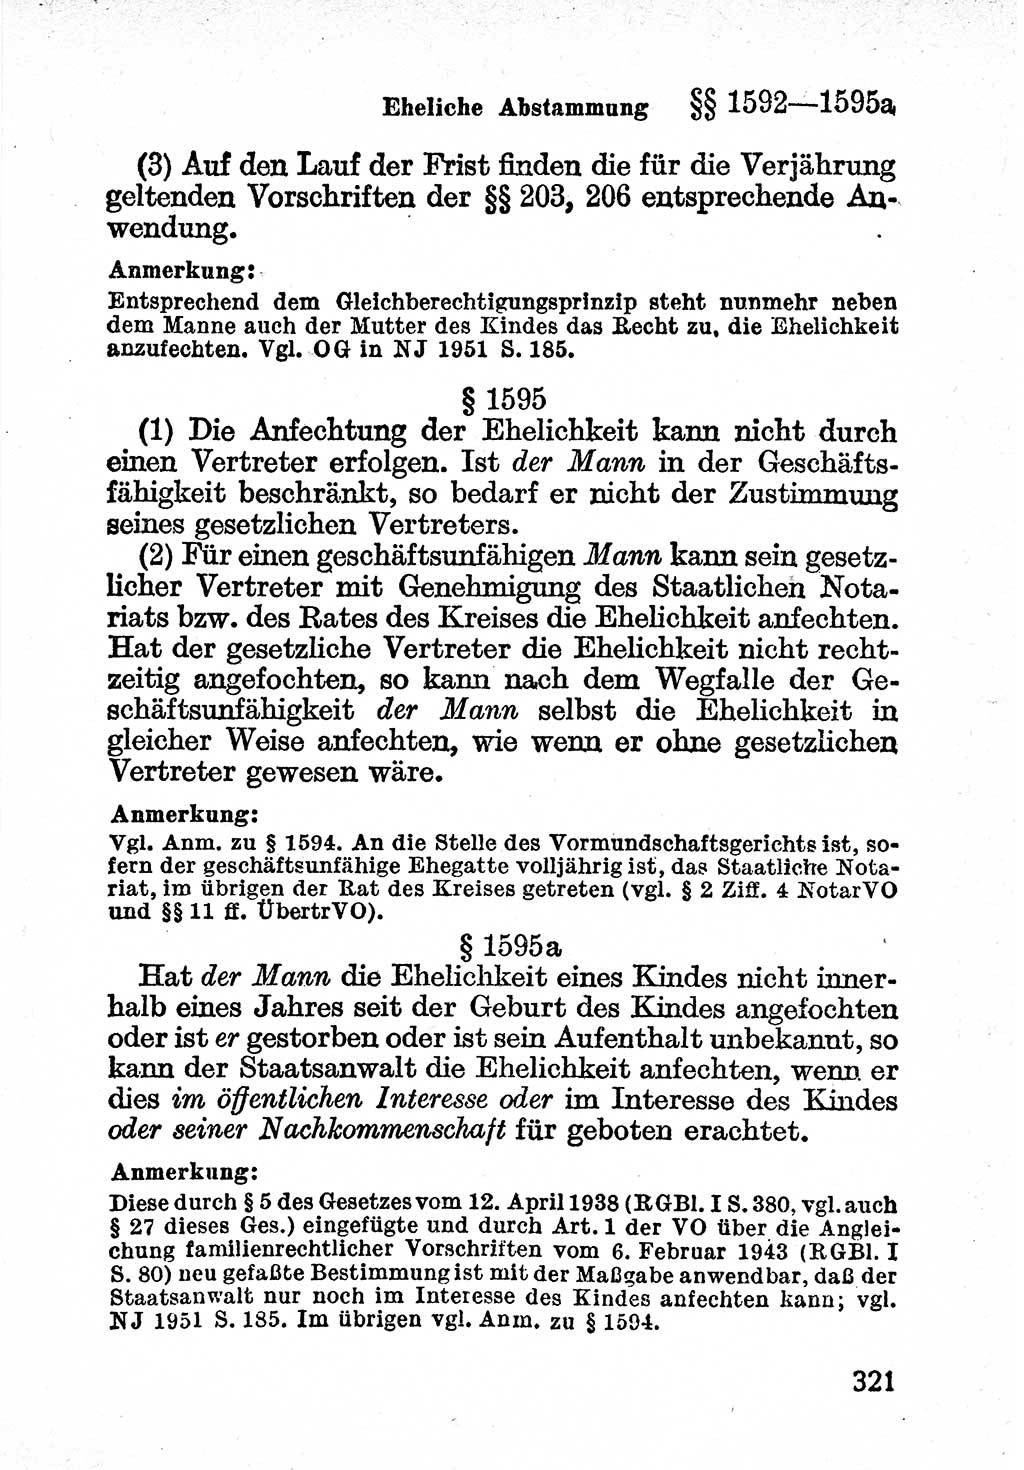 Bürgerliches Gesetzbuch (BGB) nebst wichtigen Nebengesetzen [Deutsche Demokratische Republik (DDR)] 1956, Seite 321 (BGB Nebenges. DDR 1956, S. 321)